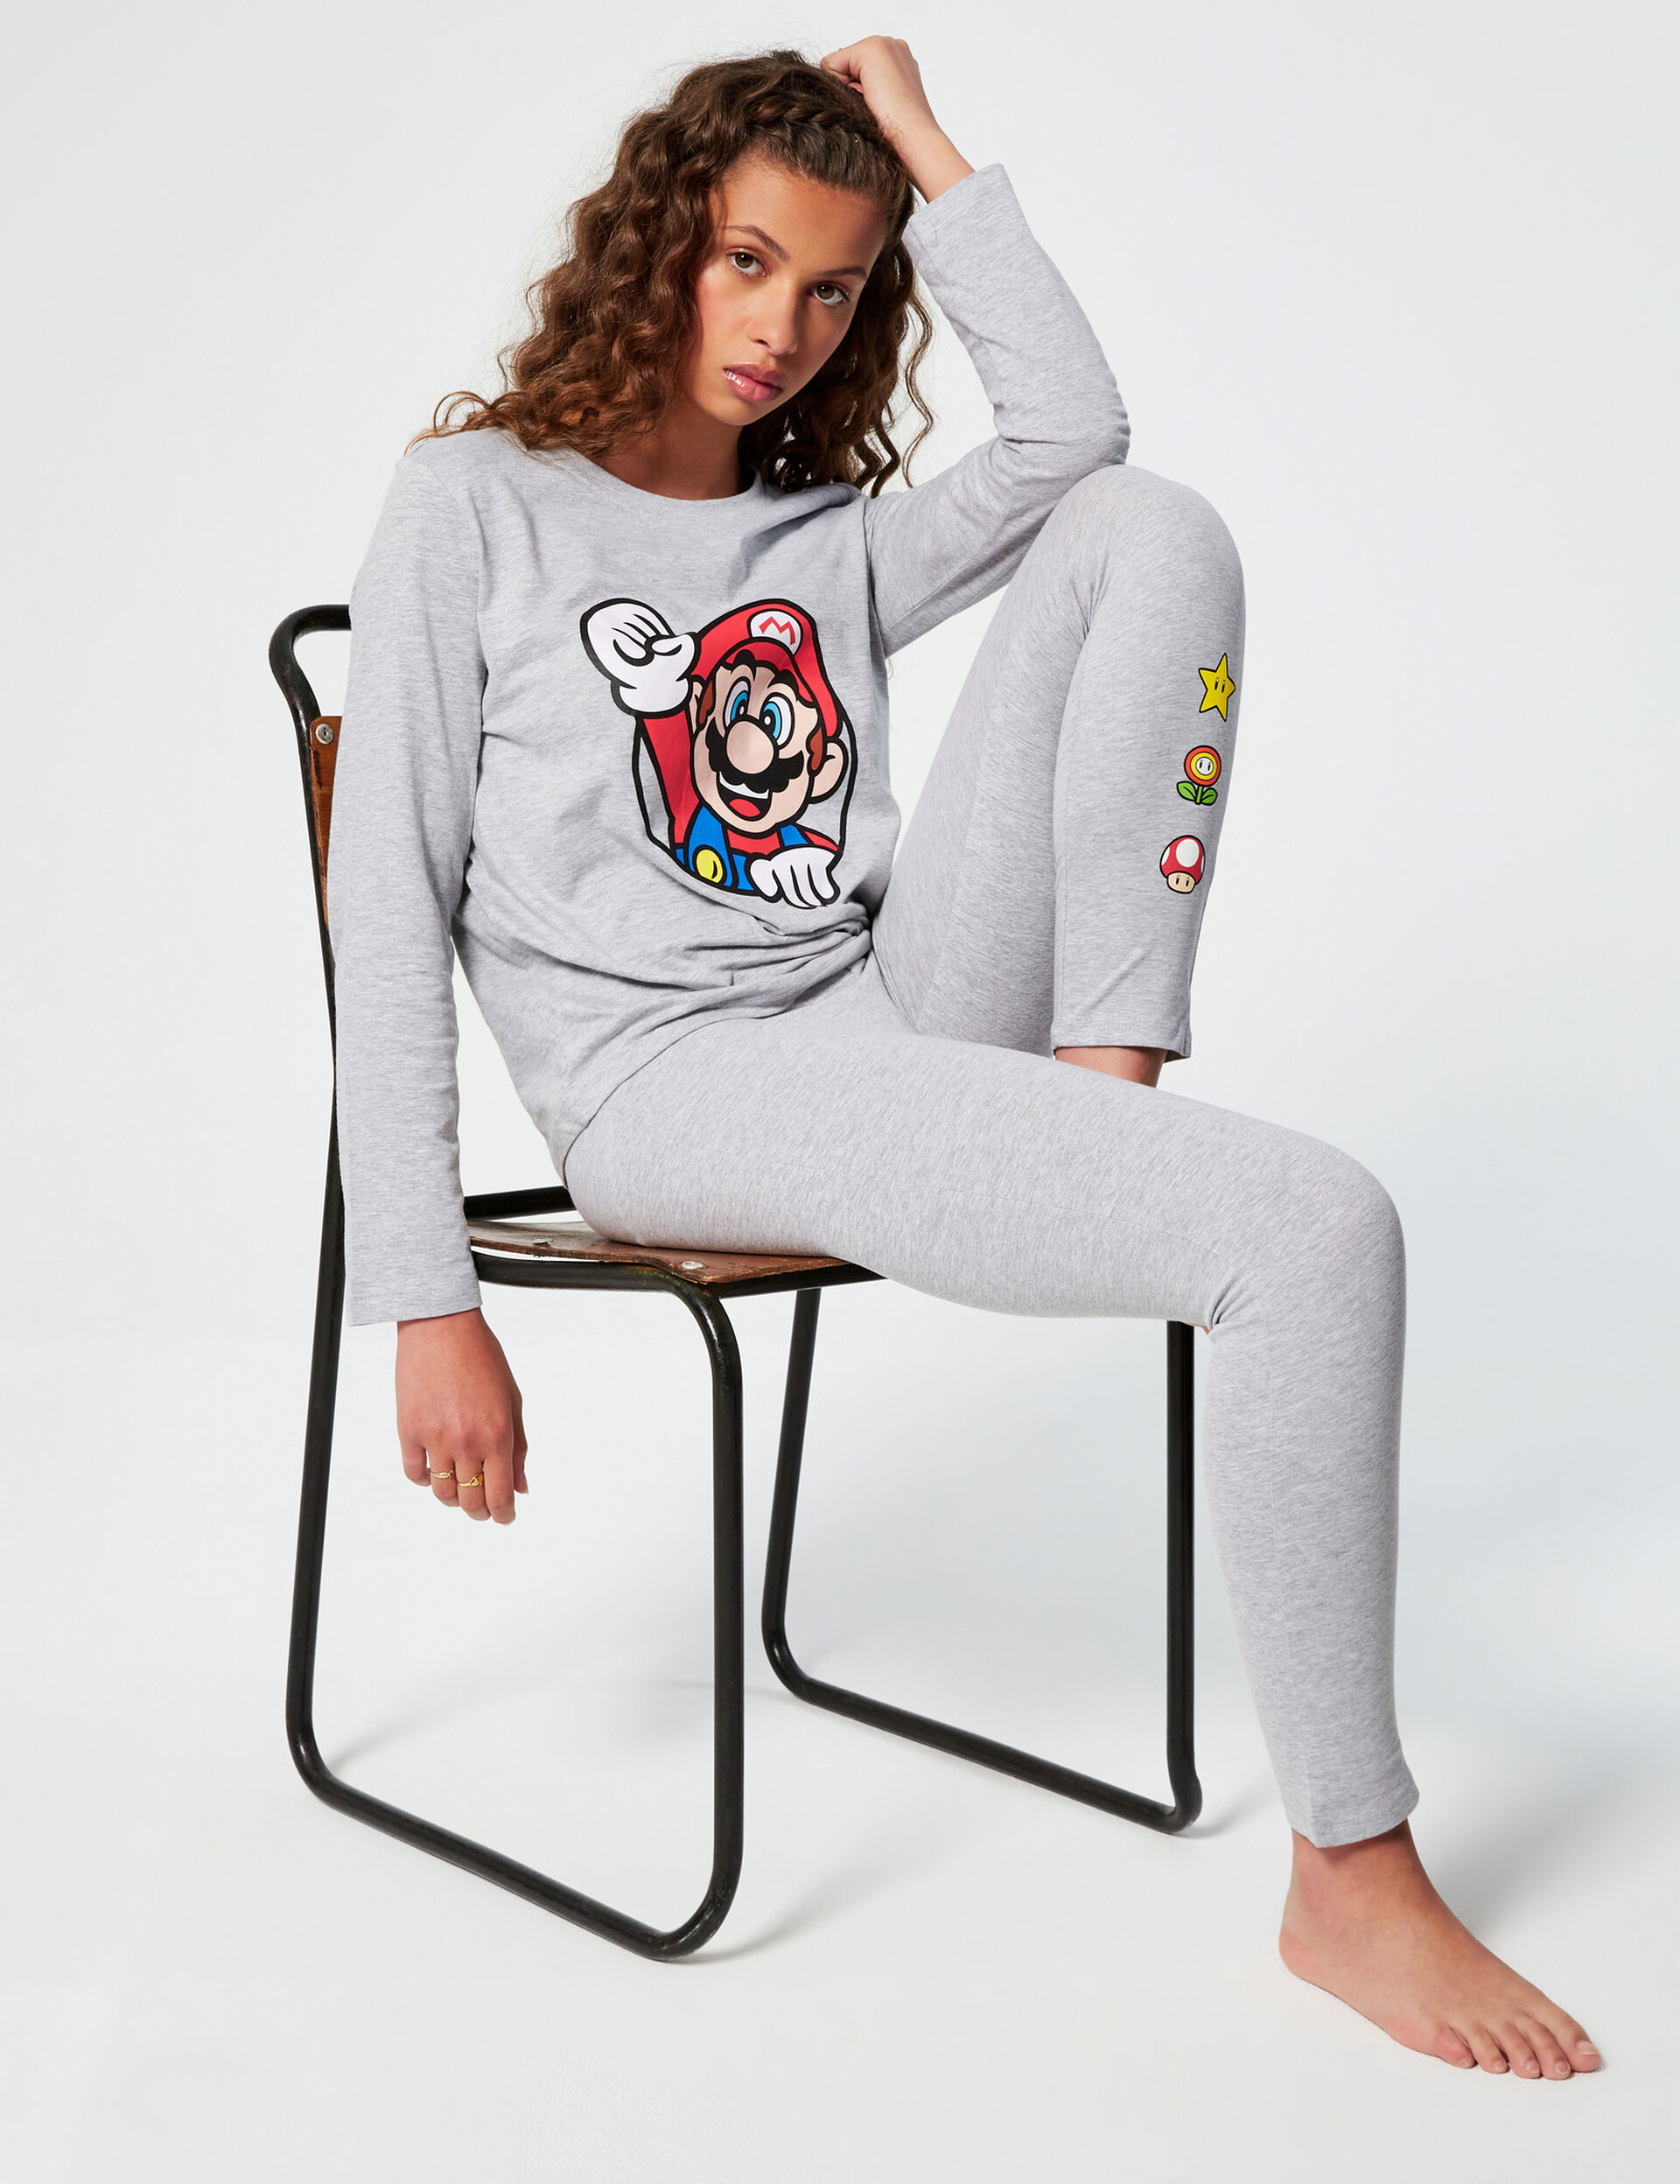 Super Mario pyjamas